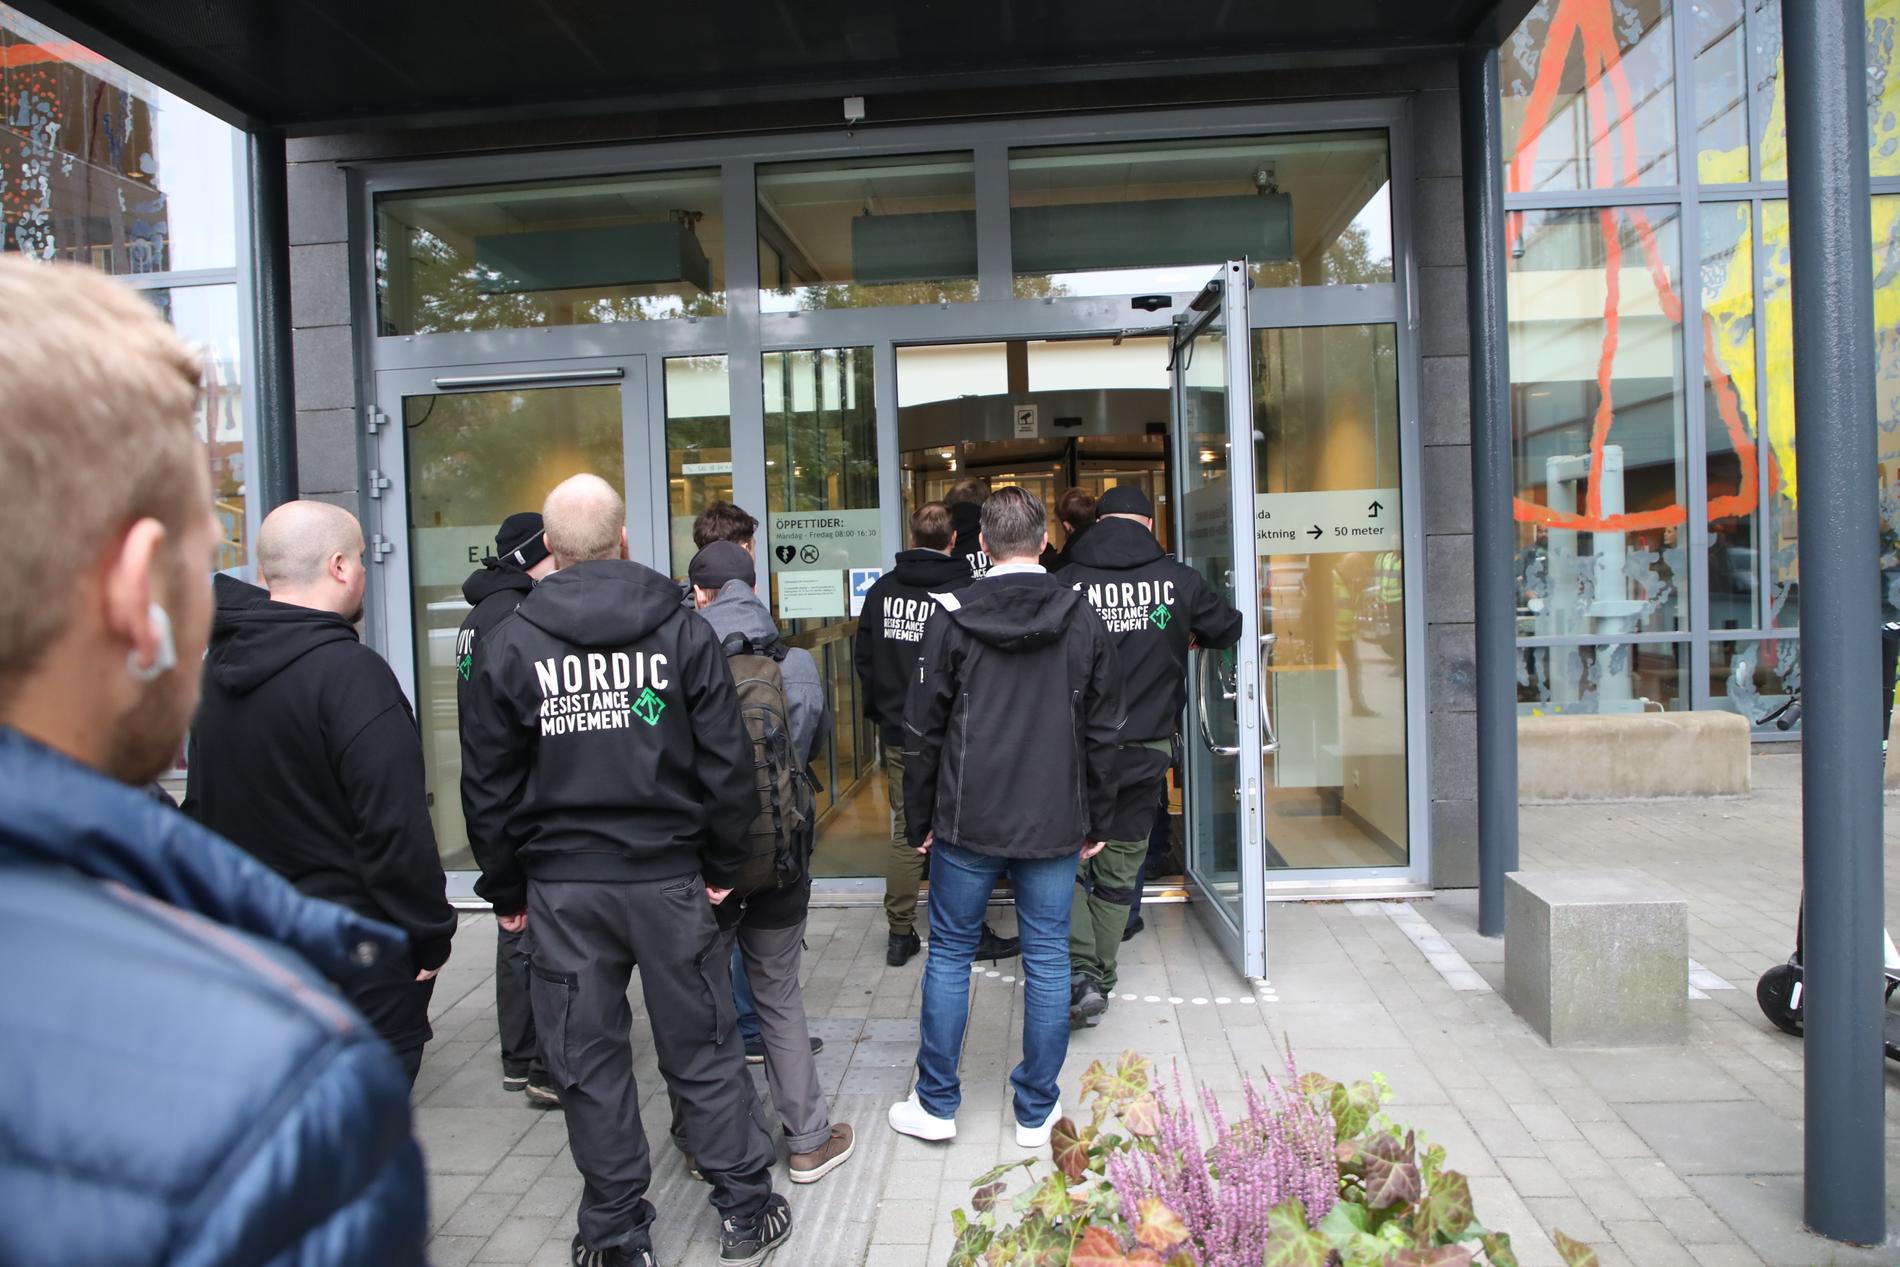 Kö in till Göteborgs tingsrätts säkerhetskontroll inför dagens förhandling mot NMR-anhängare åtalade för våldsamt upplopp och hets mot folkgrupp.